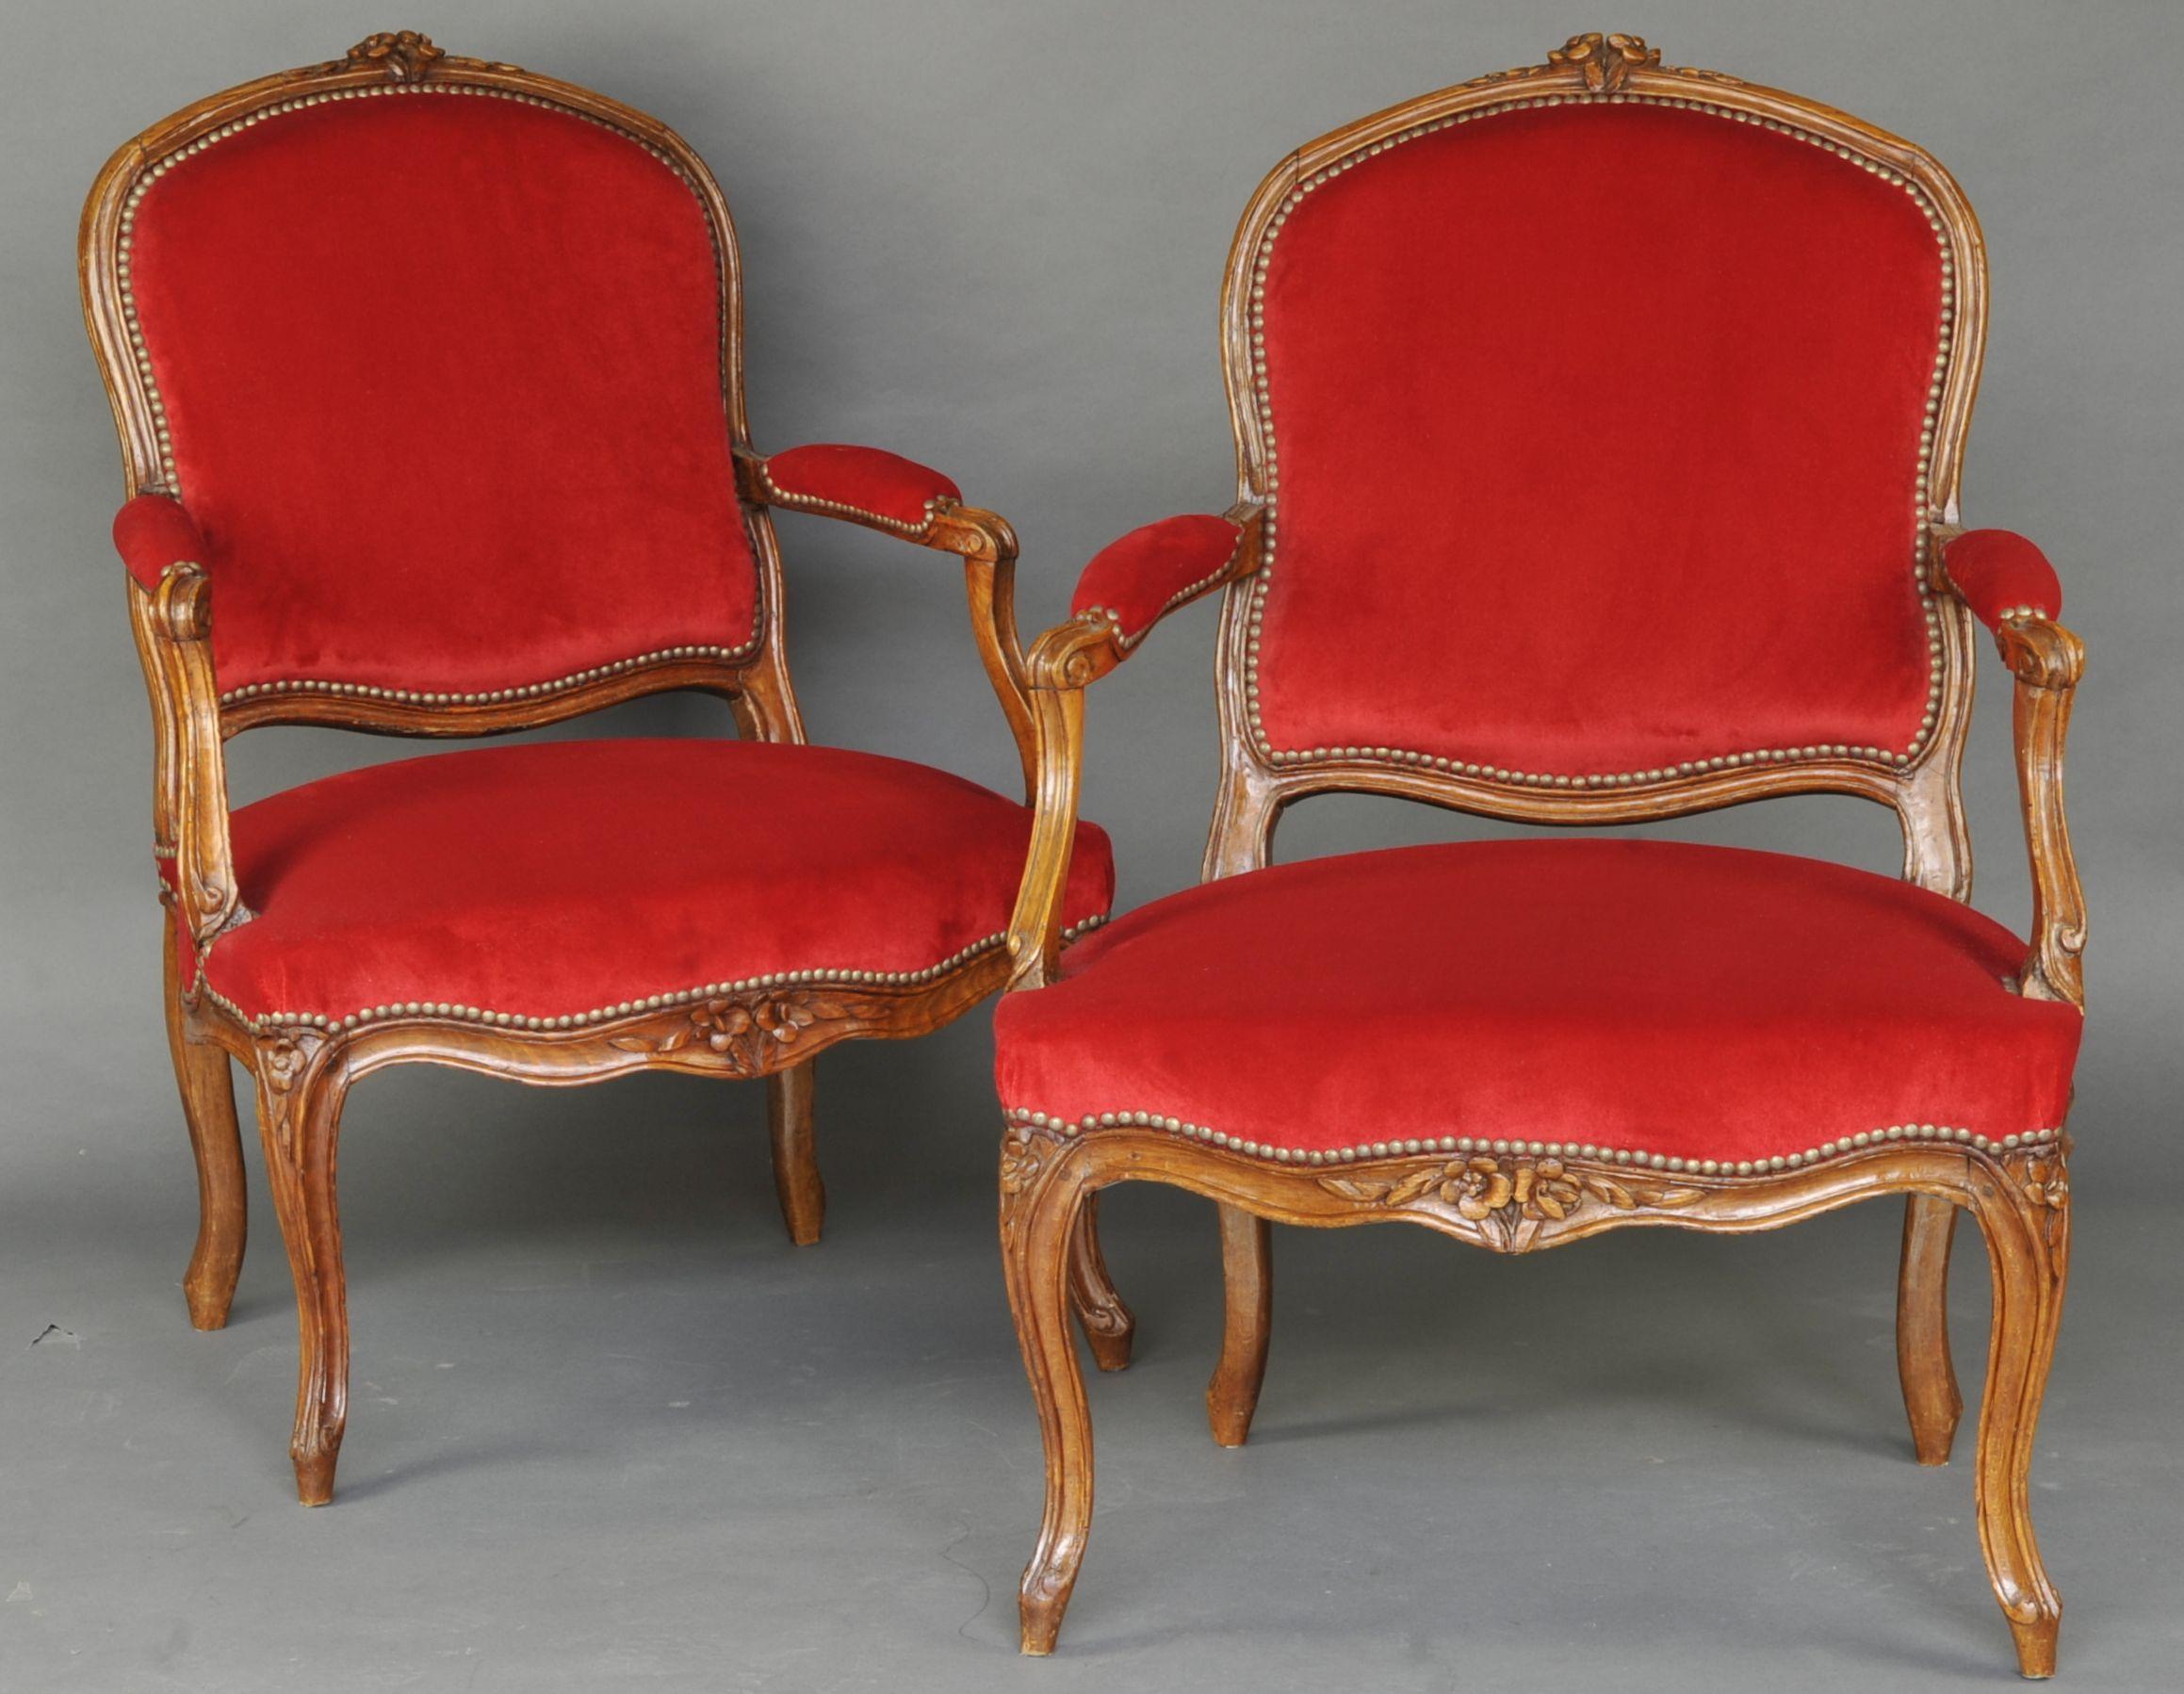 Magnifique paire de fauteuils Louis XV en hêtre sculpté, dossiers à la reine, consoles à accoudoirs en fouet, ceintures festonnées très élégantes sculptées de filets et de bouquets de fleurs.

Très beau tissu en velours rouge de Lelièvre à